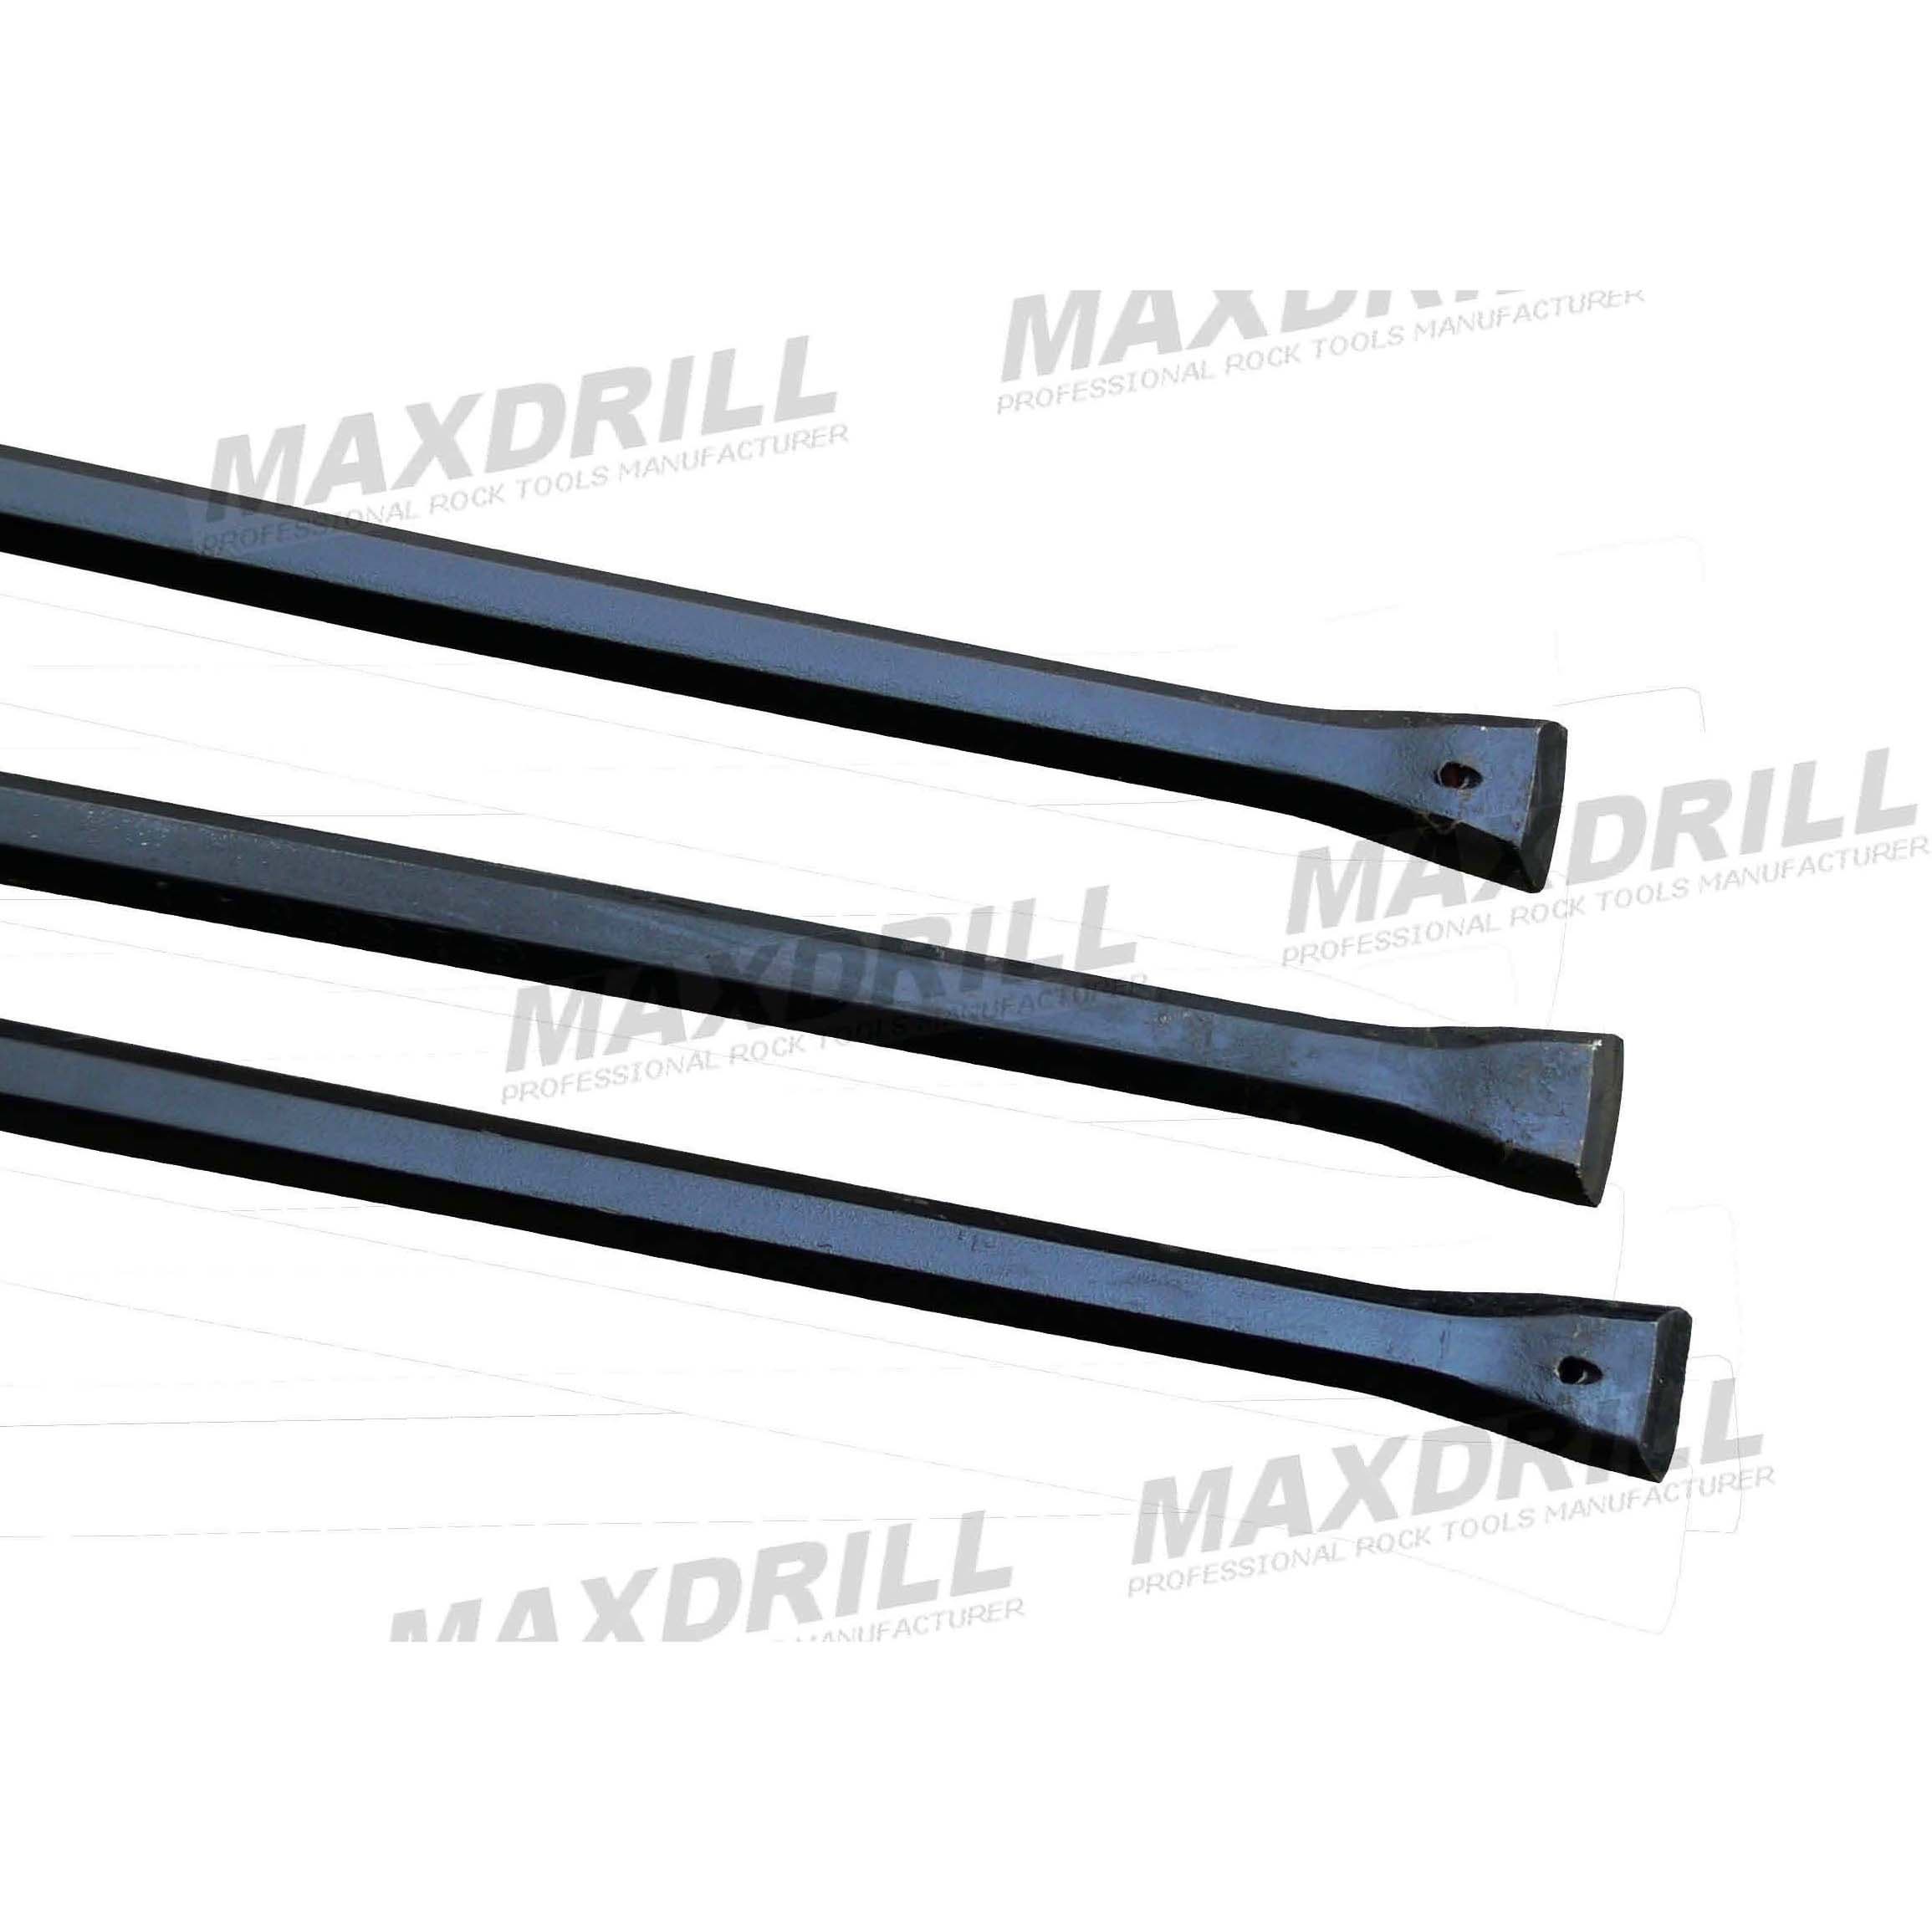 MAXDRILL Integral Drill Steel